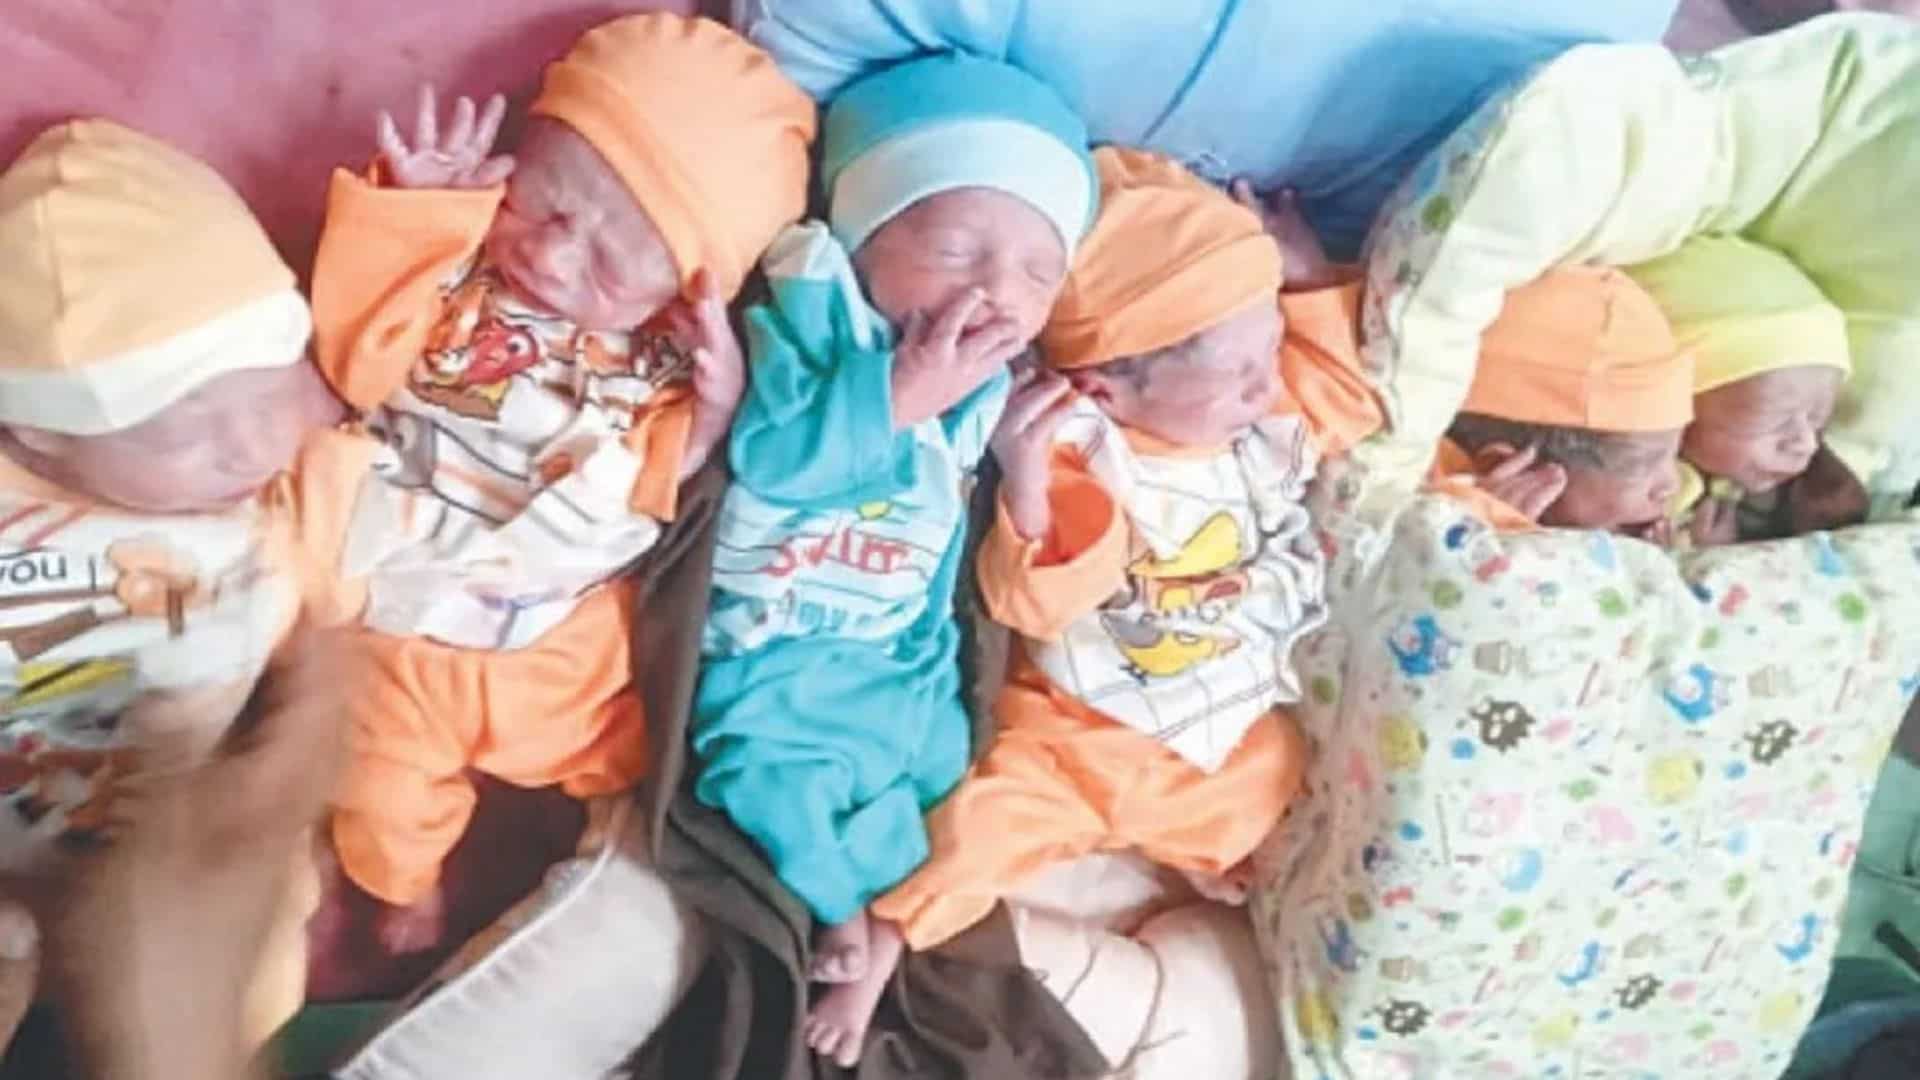 En un caso "extremadamente raro", una mujer paquistaní da a luz a 6 bebés en una hora en Rawalpindi